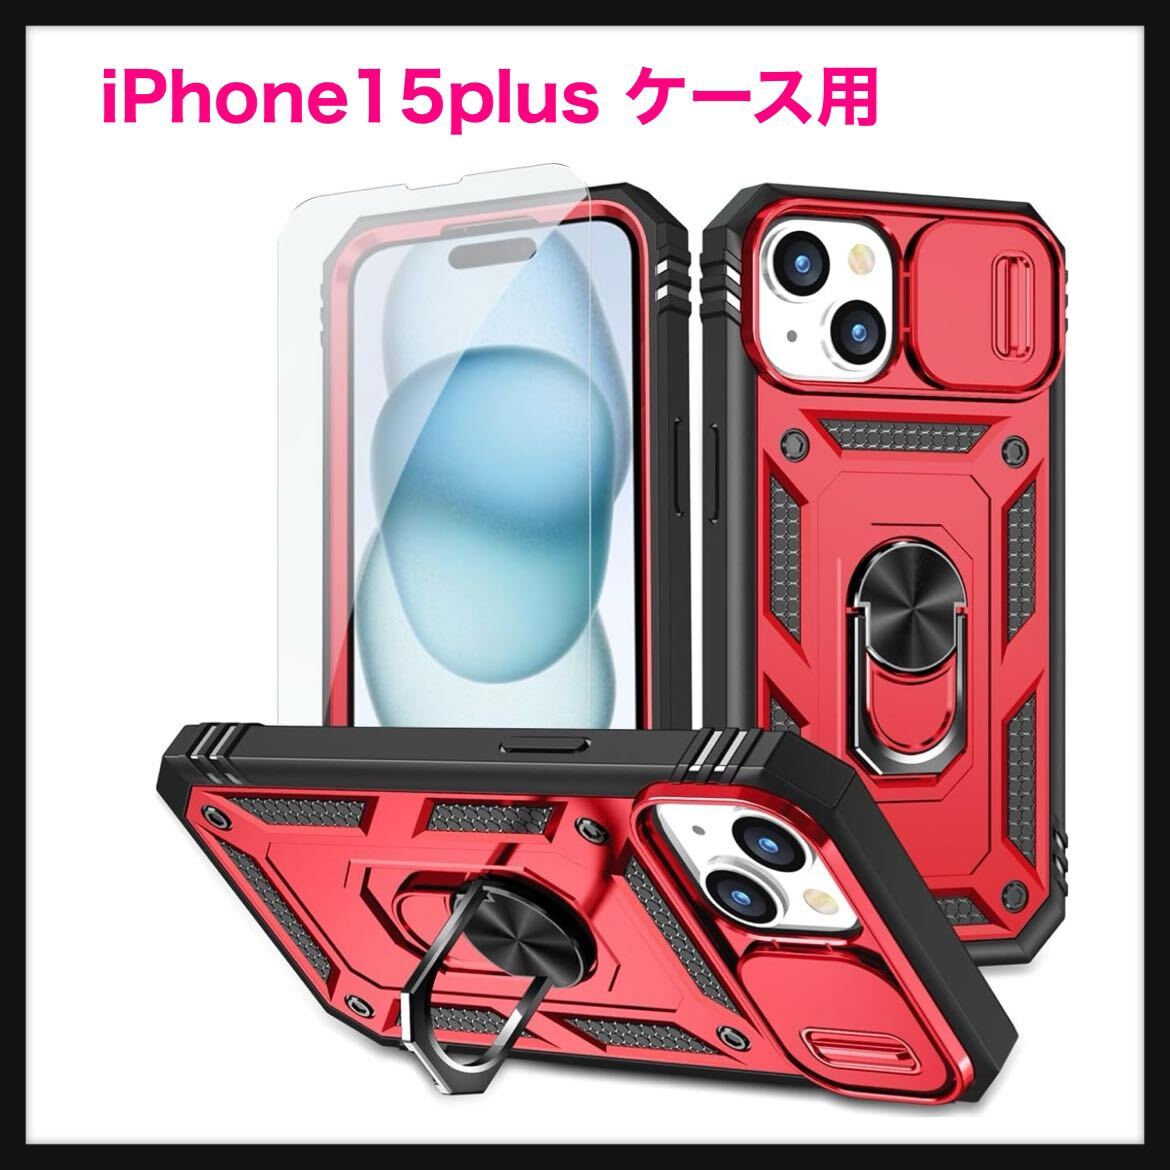 【開封のみ】NKECXKJ★iPhone15plus ケース用, iPhone 15 Plus ケース スマホケース + 化ガラス フィルム, 360°回転 スタンド機能 _画像1